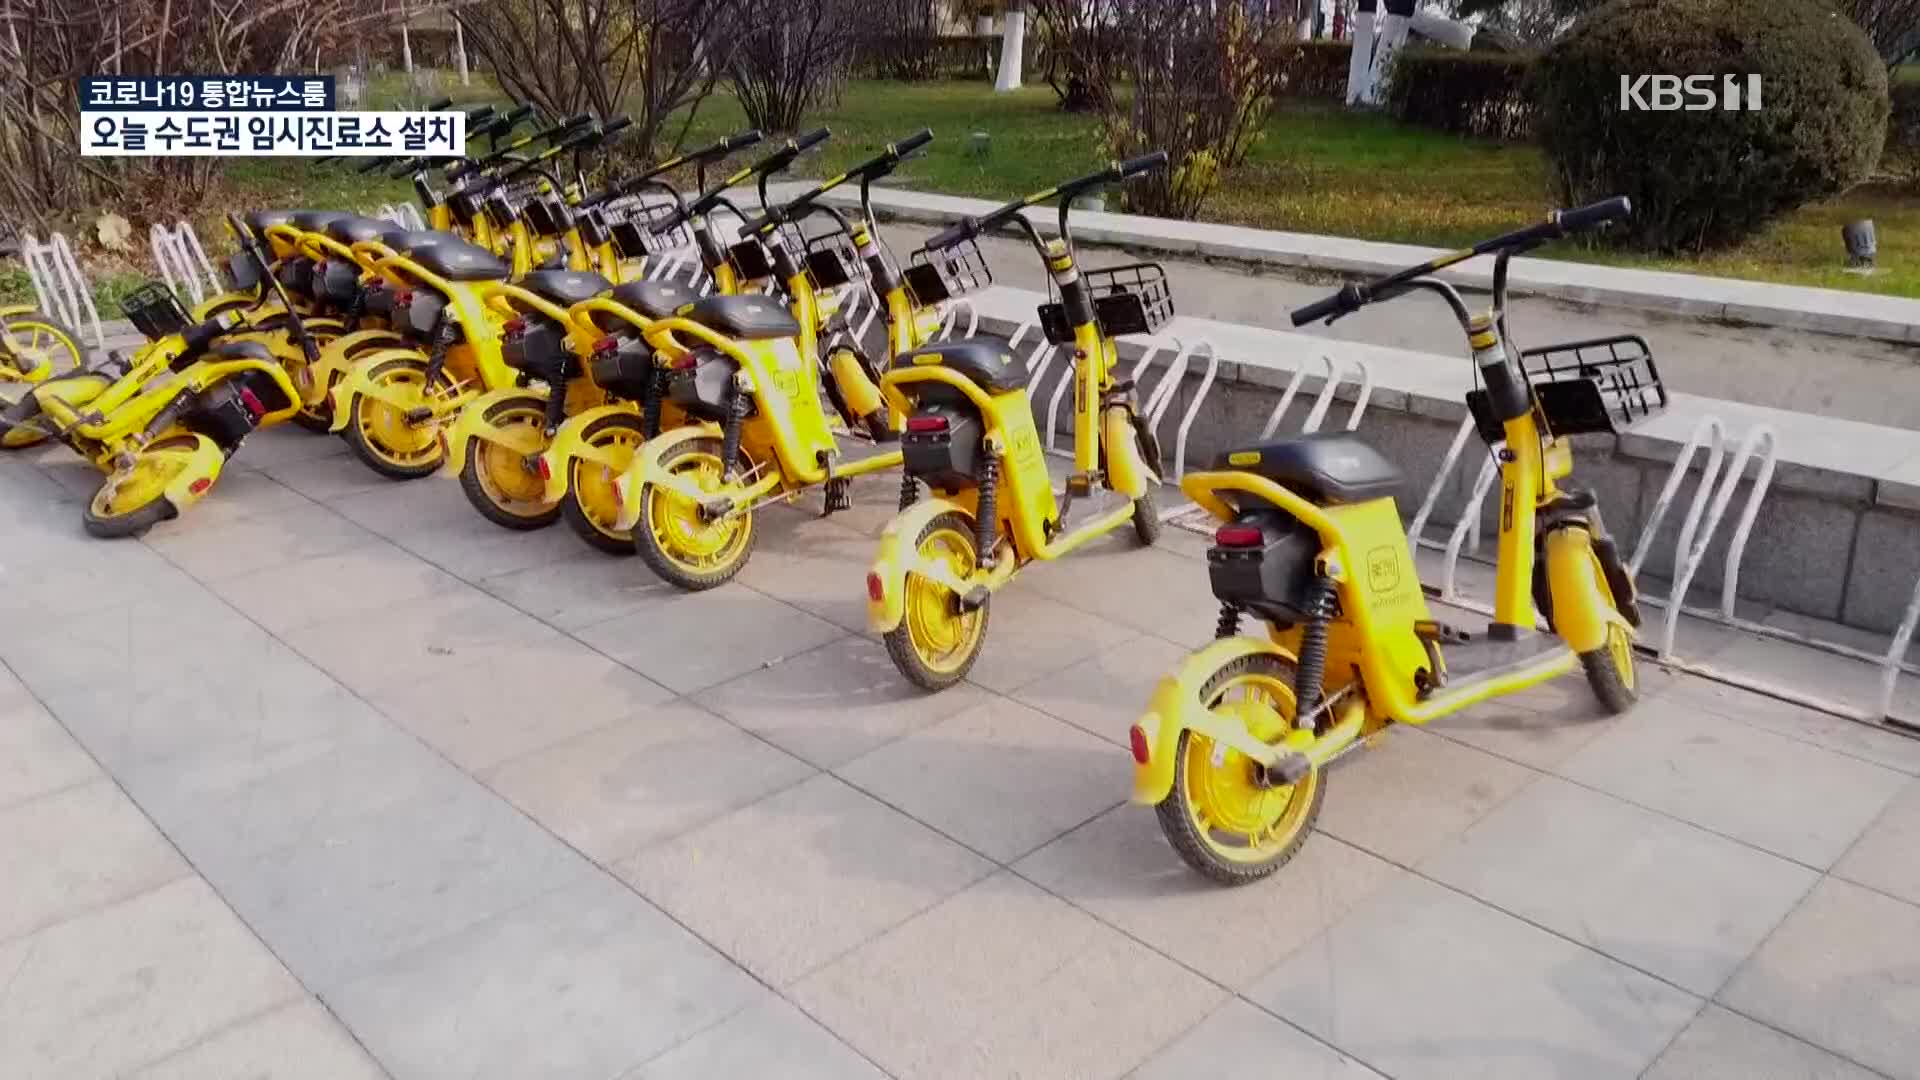 [코로나19 국제뉴스] “공유 자전거 생계 위협”…中 택시 업계 반발 격화